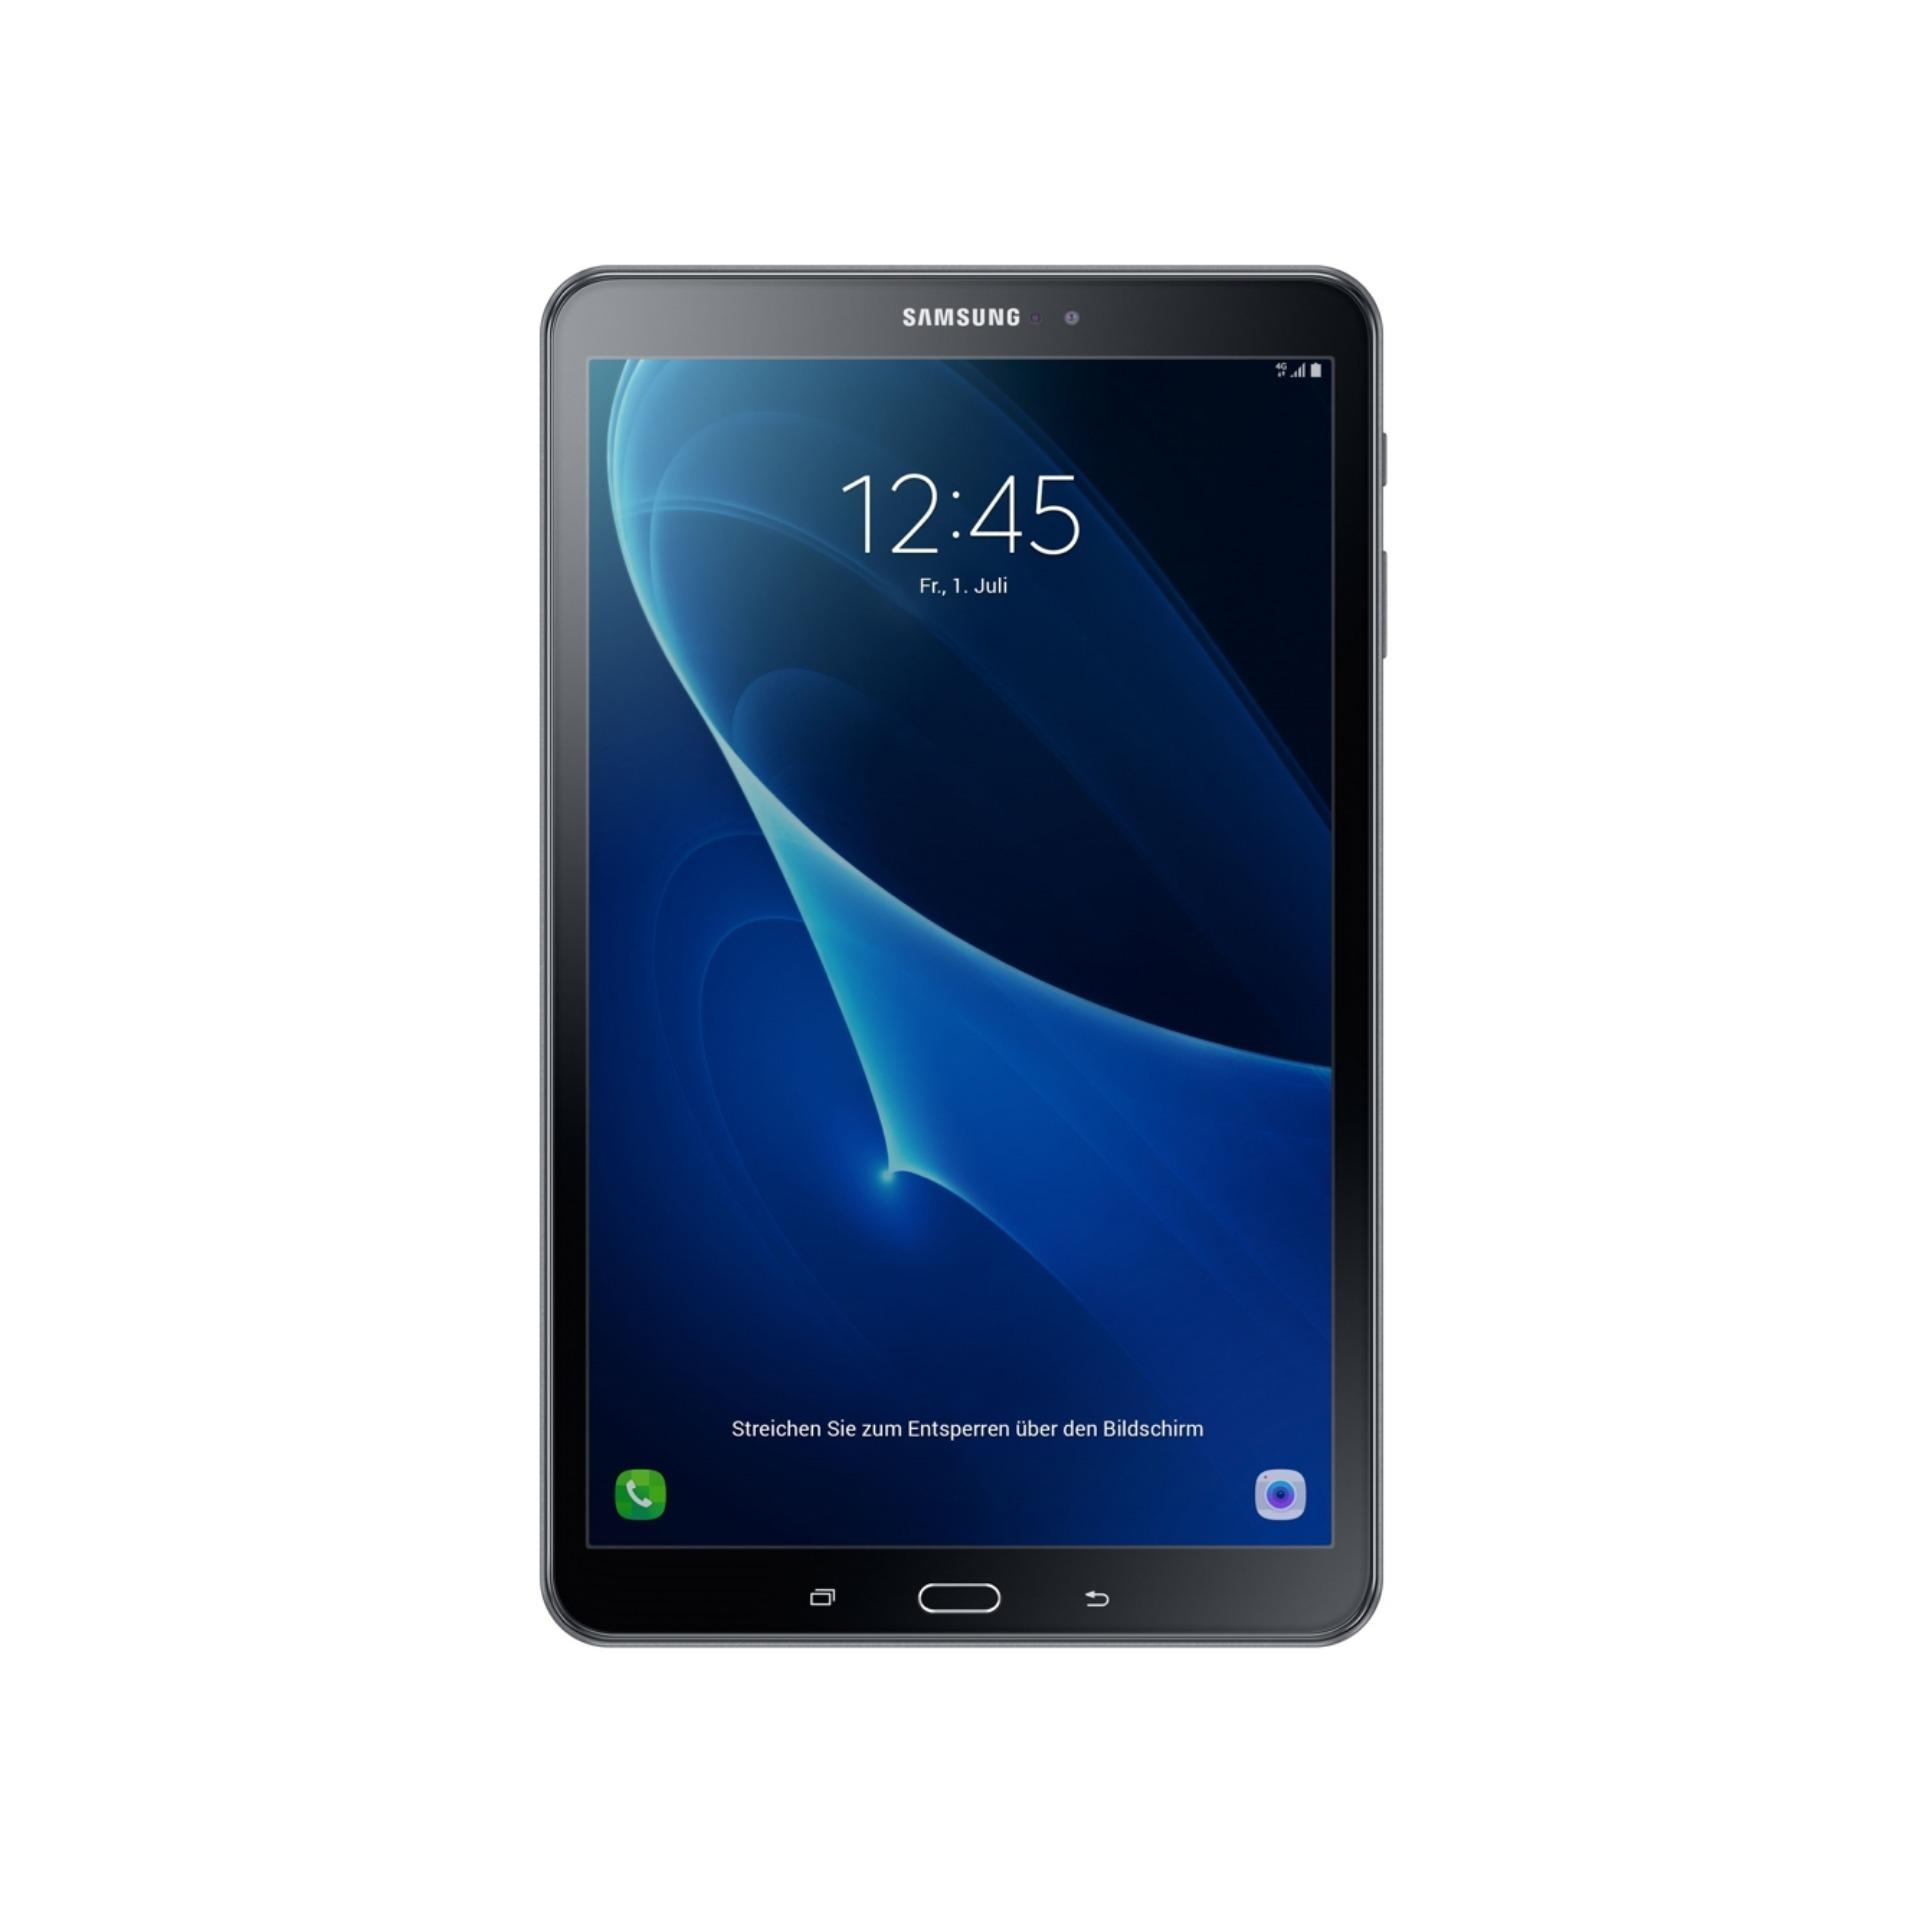 Máy tính bảng Samsung Galaxy Tab A (2016) 10.1 inch 16GB - Hãng Phân phối chính thức.